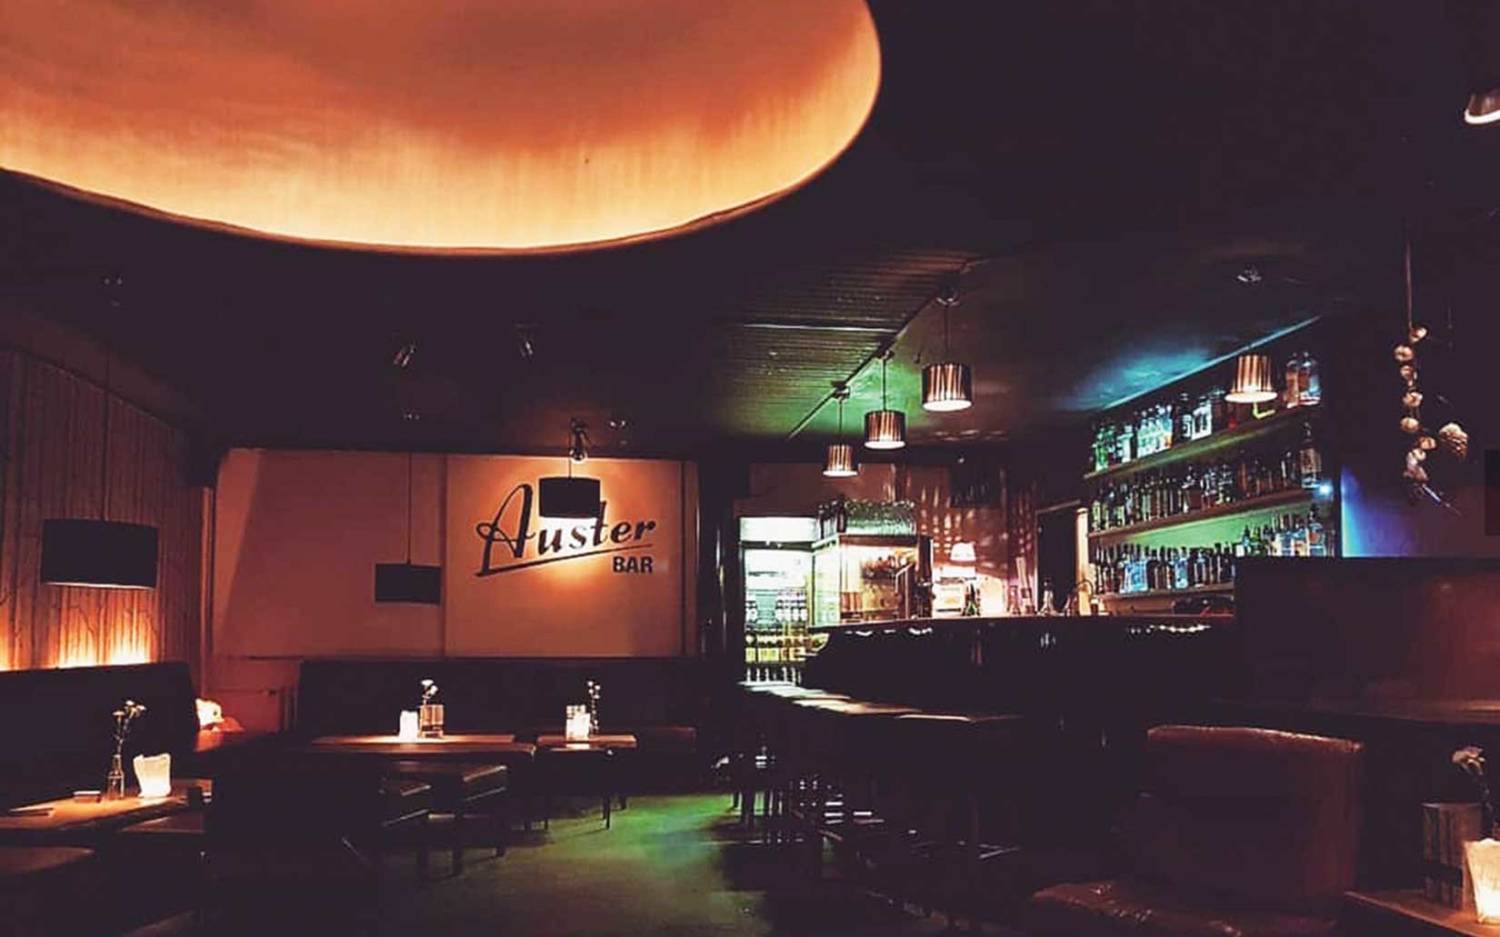 In der Auster Bar trifft sich Eimsbüttel auf einen Cocktail / ©Auster Bar